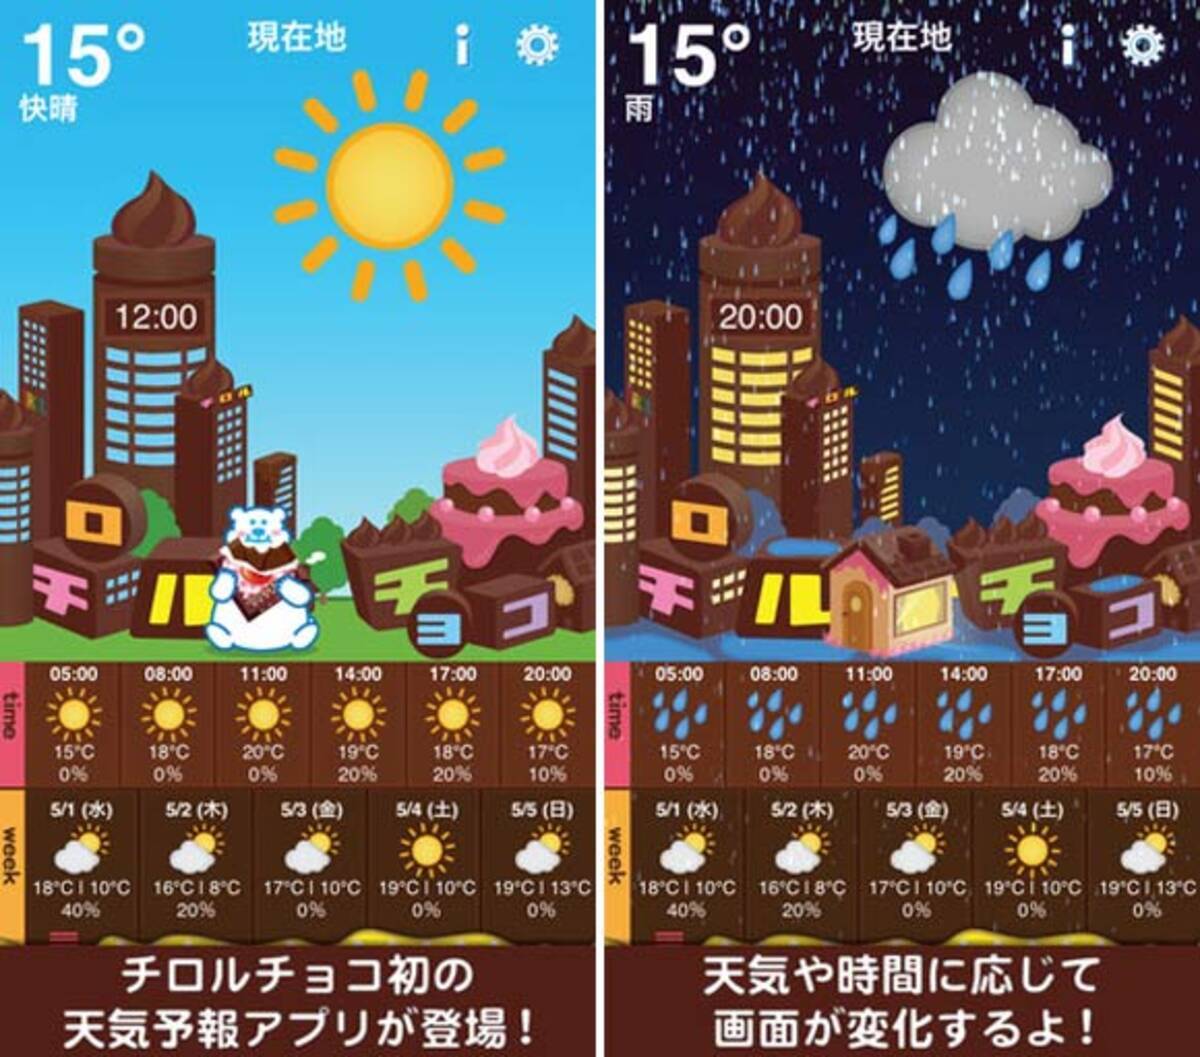 可愛くて楽しいミニゲーム付き天気予報アプリ チロル天気 13年5月22日 エキサイトニュース